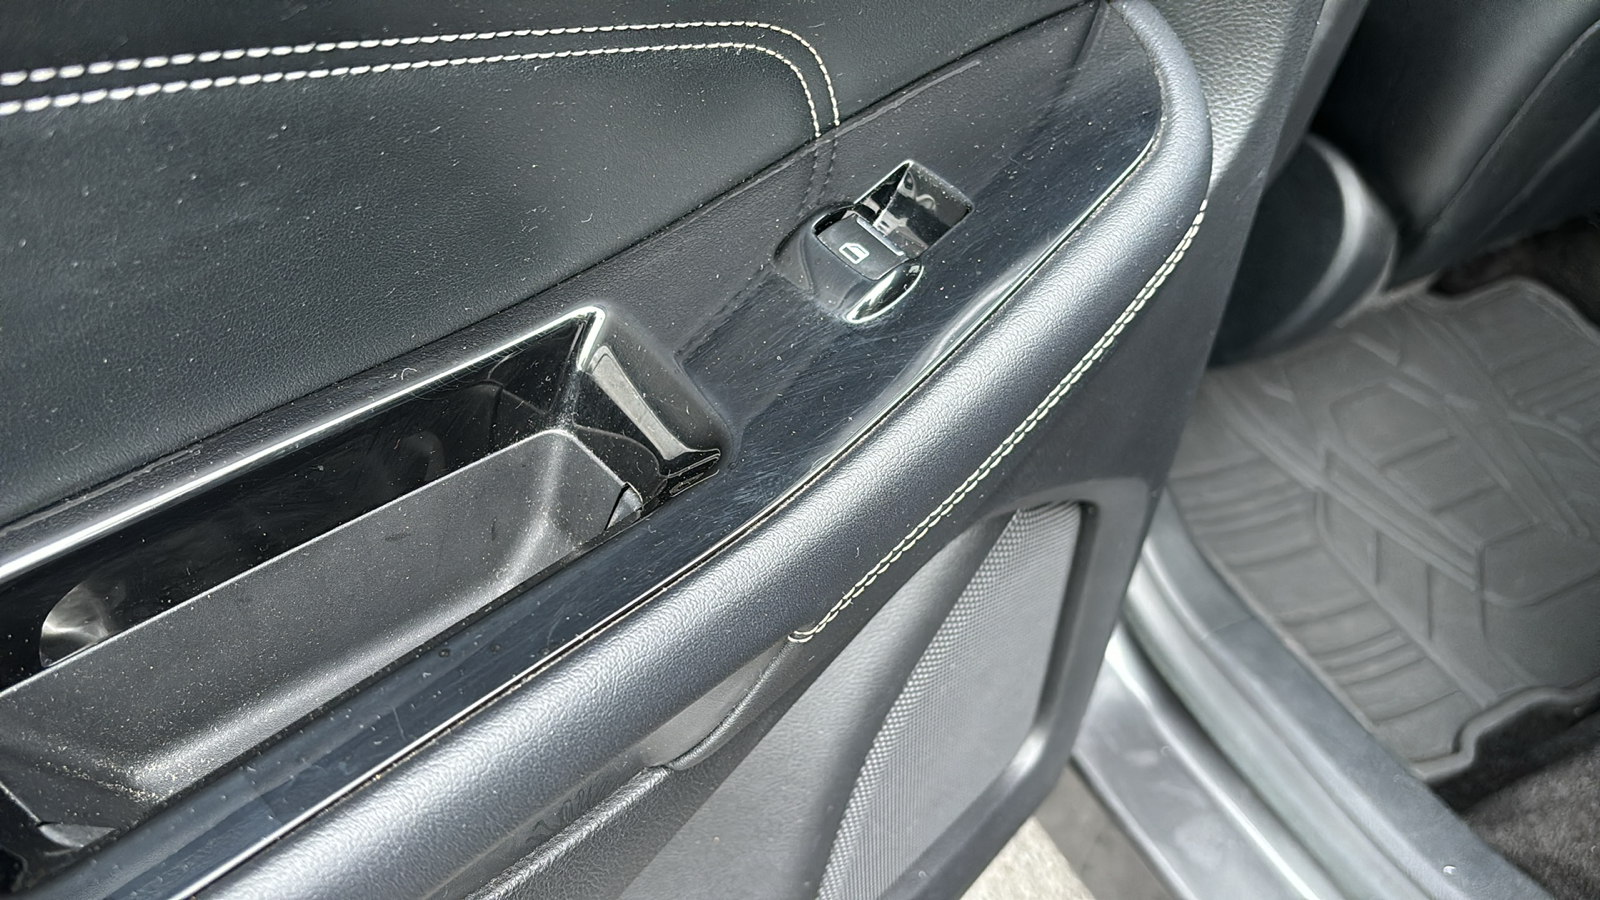 2015 Ford Edge Titanium 14